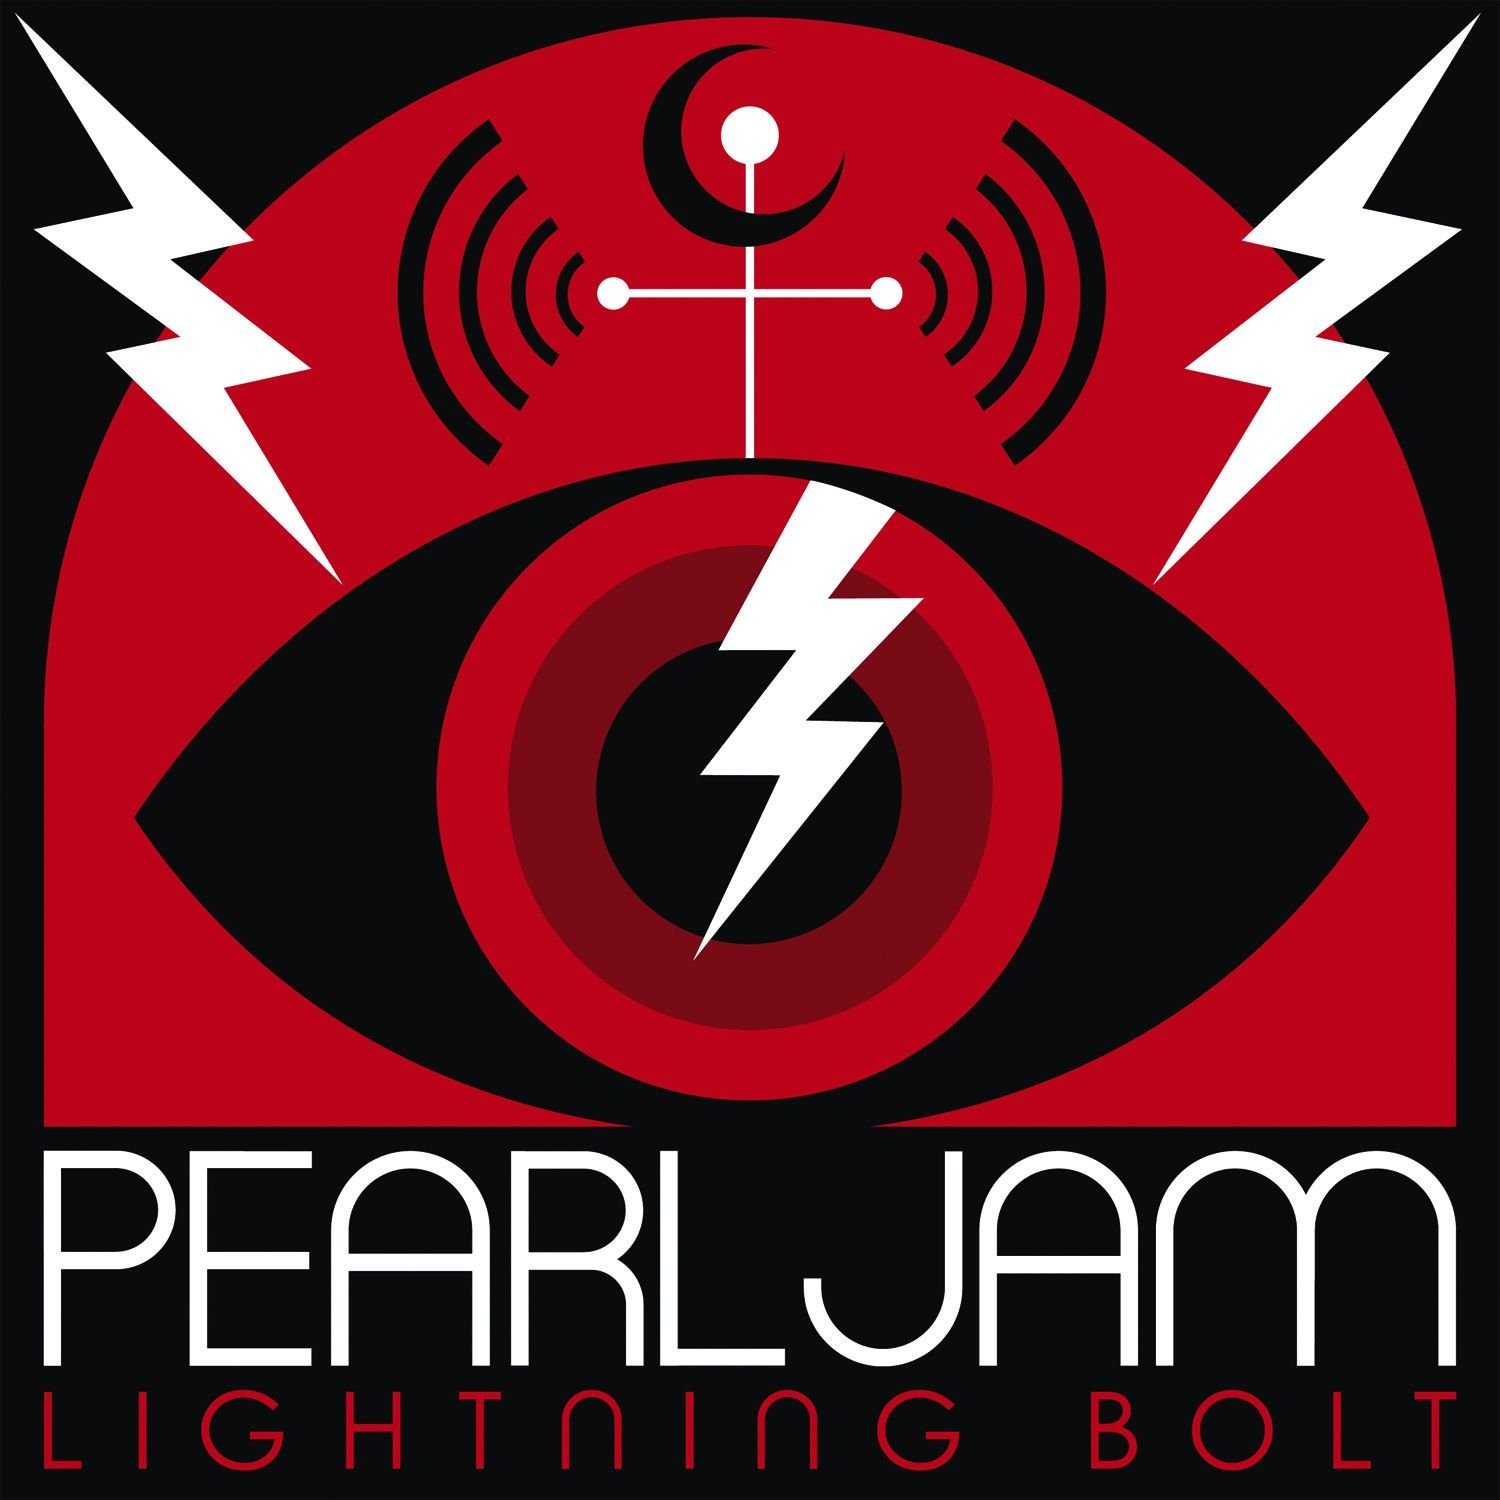 Pearl Jam: Lightning Bolt post image